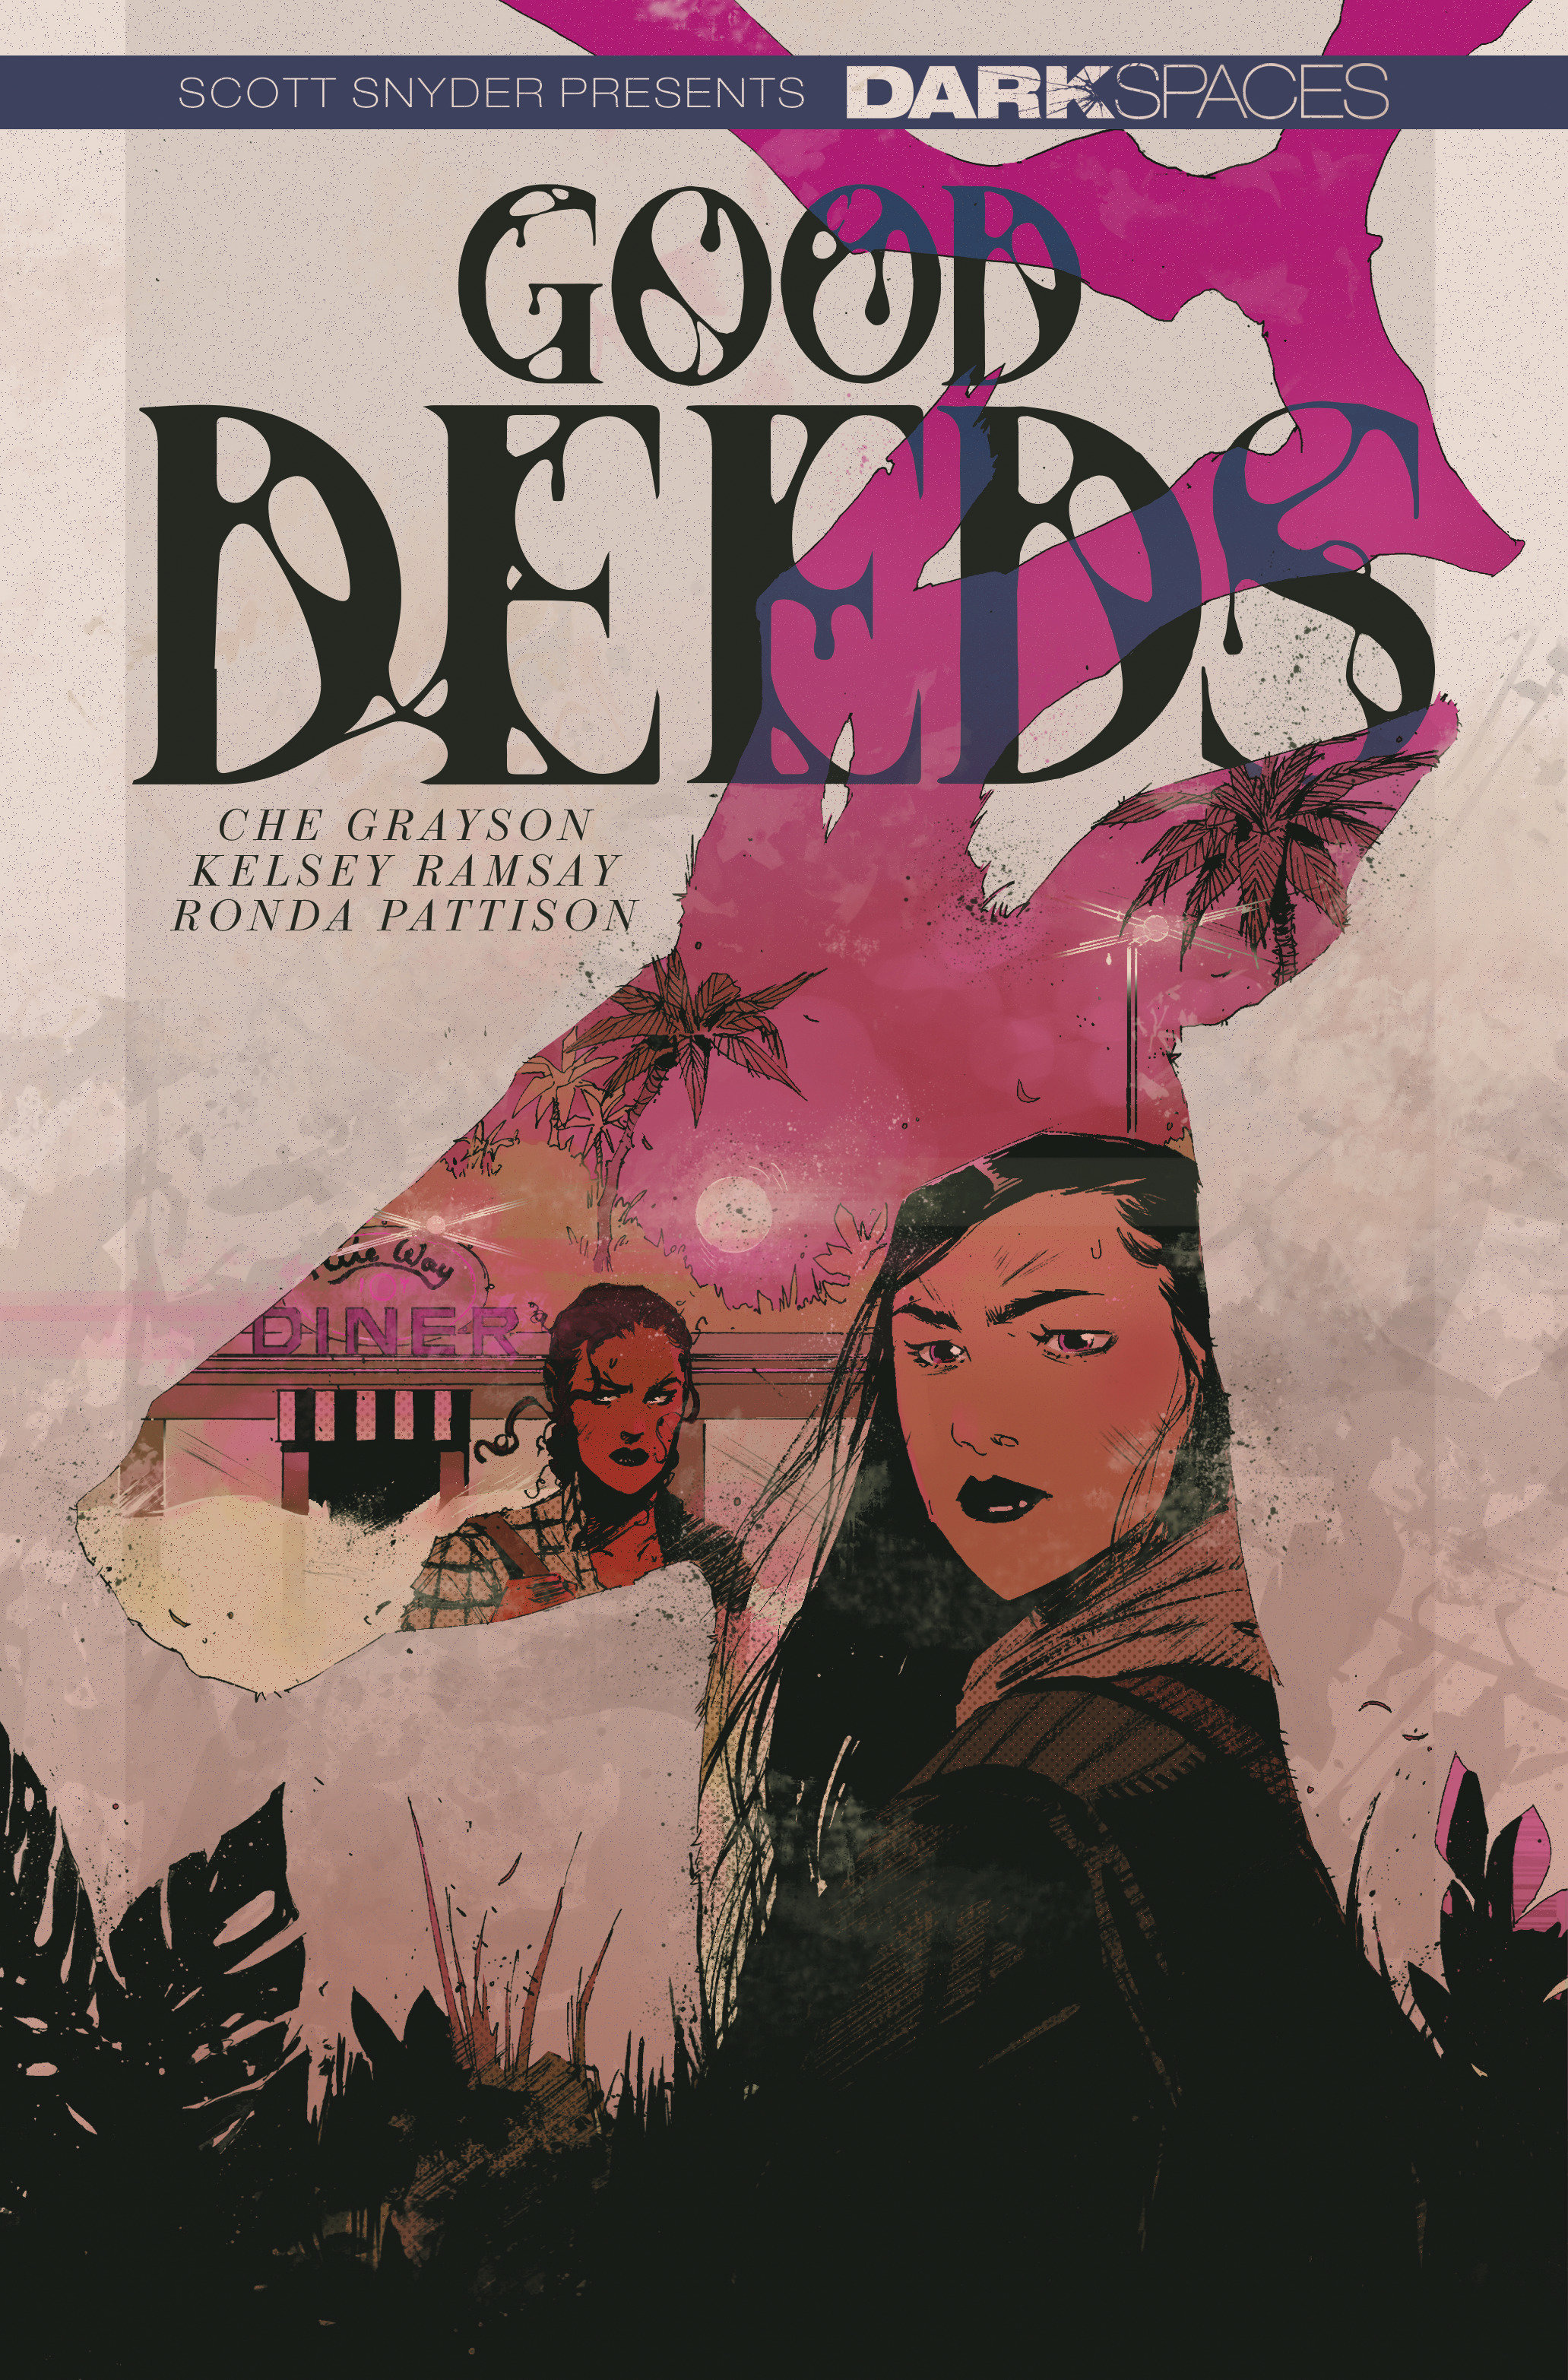 Dark Spaces: Good Deeds Graphic Novel